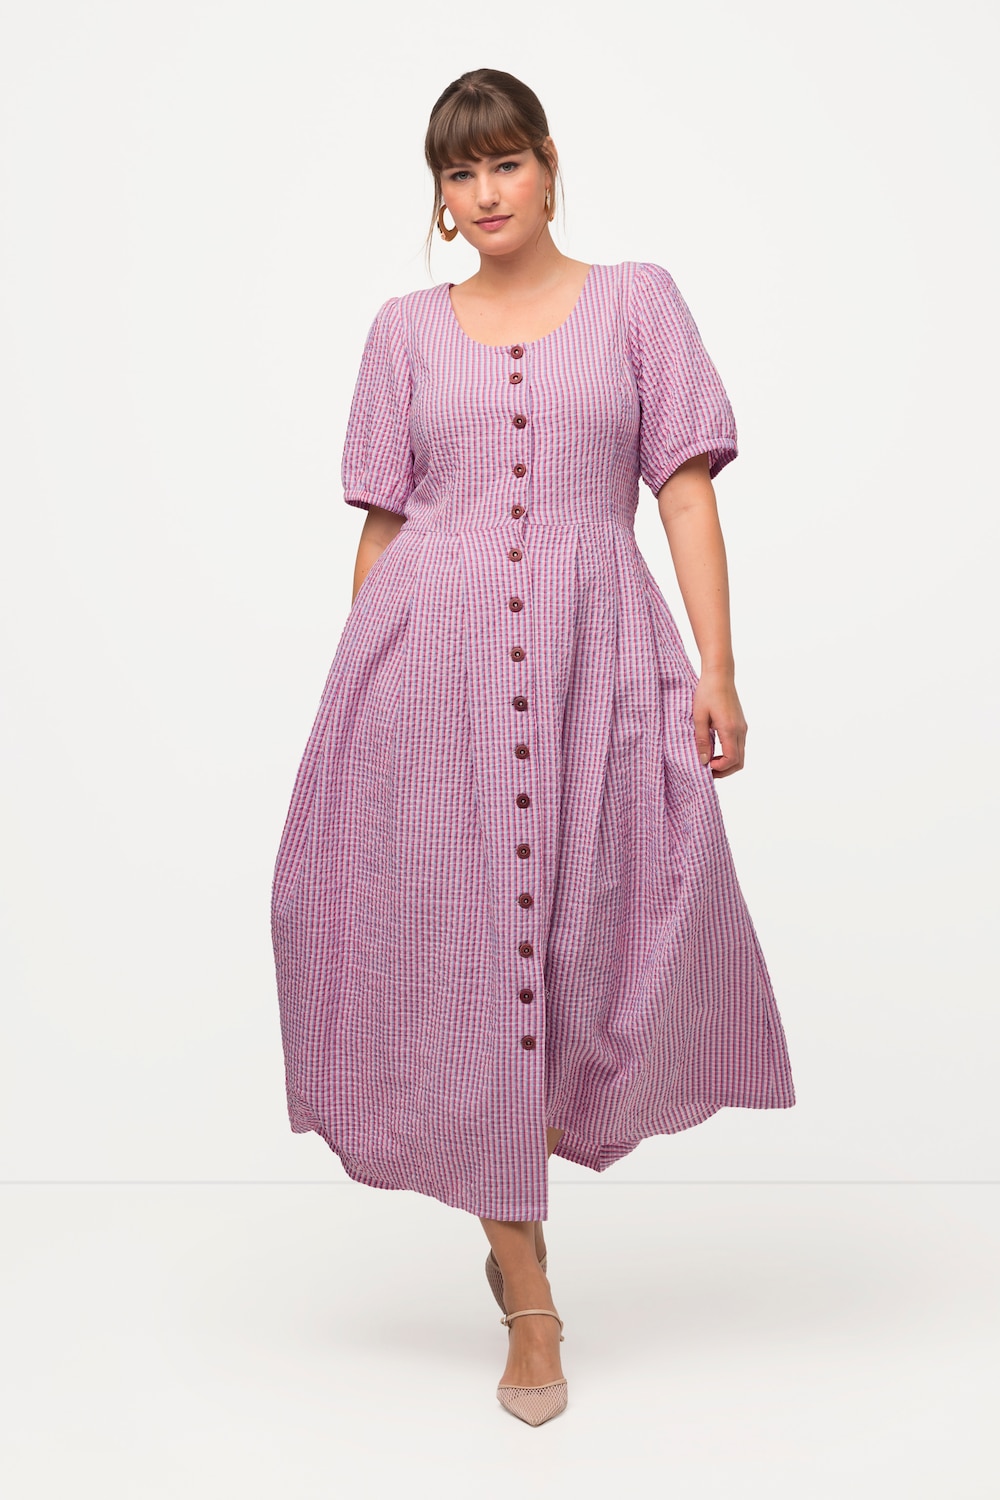 Große Größen Kleid, Damen, rosa, Größe: 42, Baumwolle/Polyester/Viskose, Ulla Popken von Ulla Popken